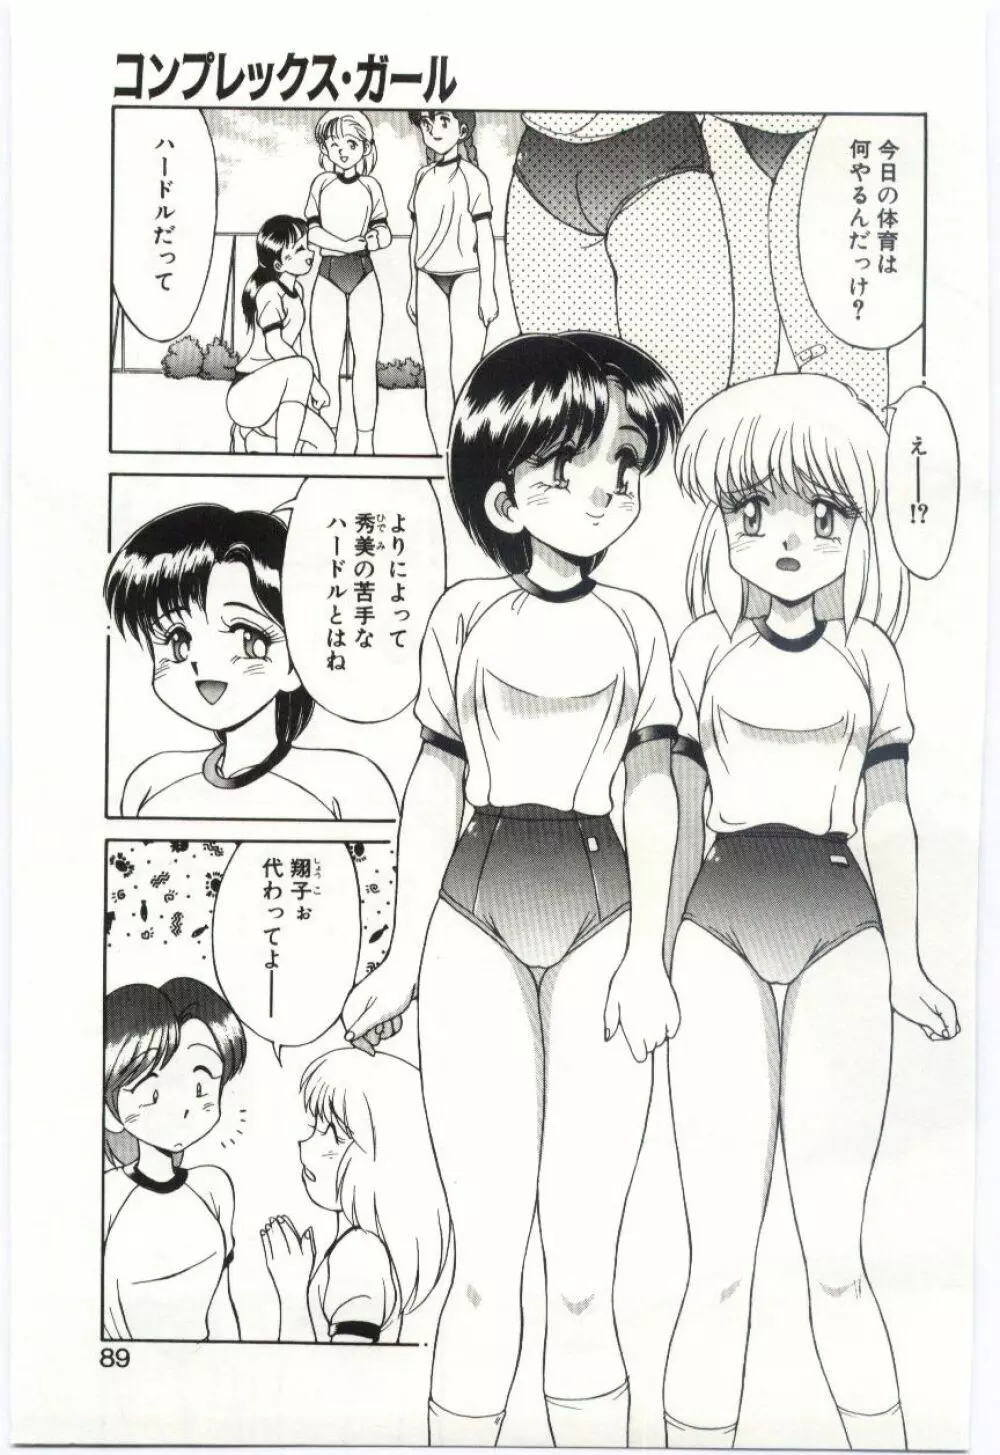 Mizugi Crisis part 1 - JP Page.88